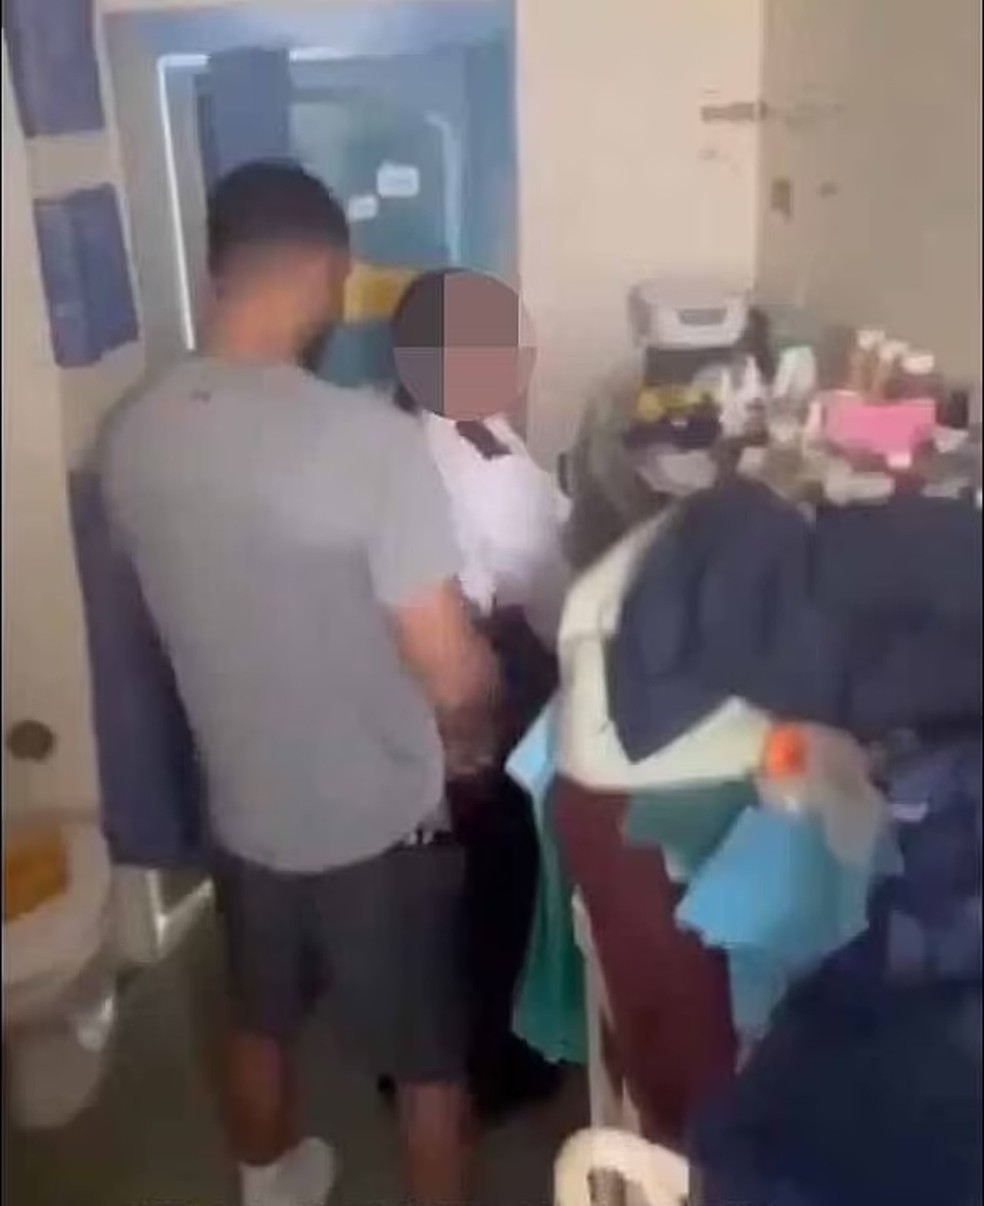 Brasileira que trabalhava em presídio é presa após filmar sexo com detento, diz imprensa britânica. — Foto: Reprodução